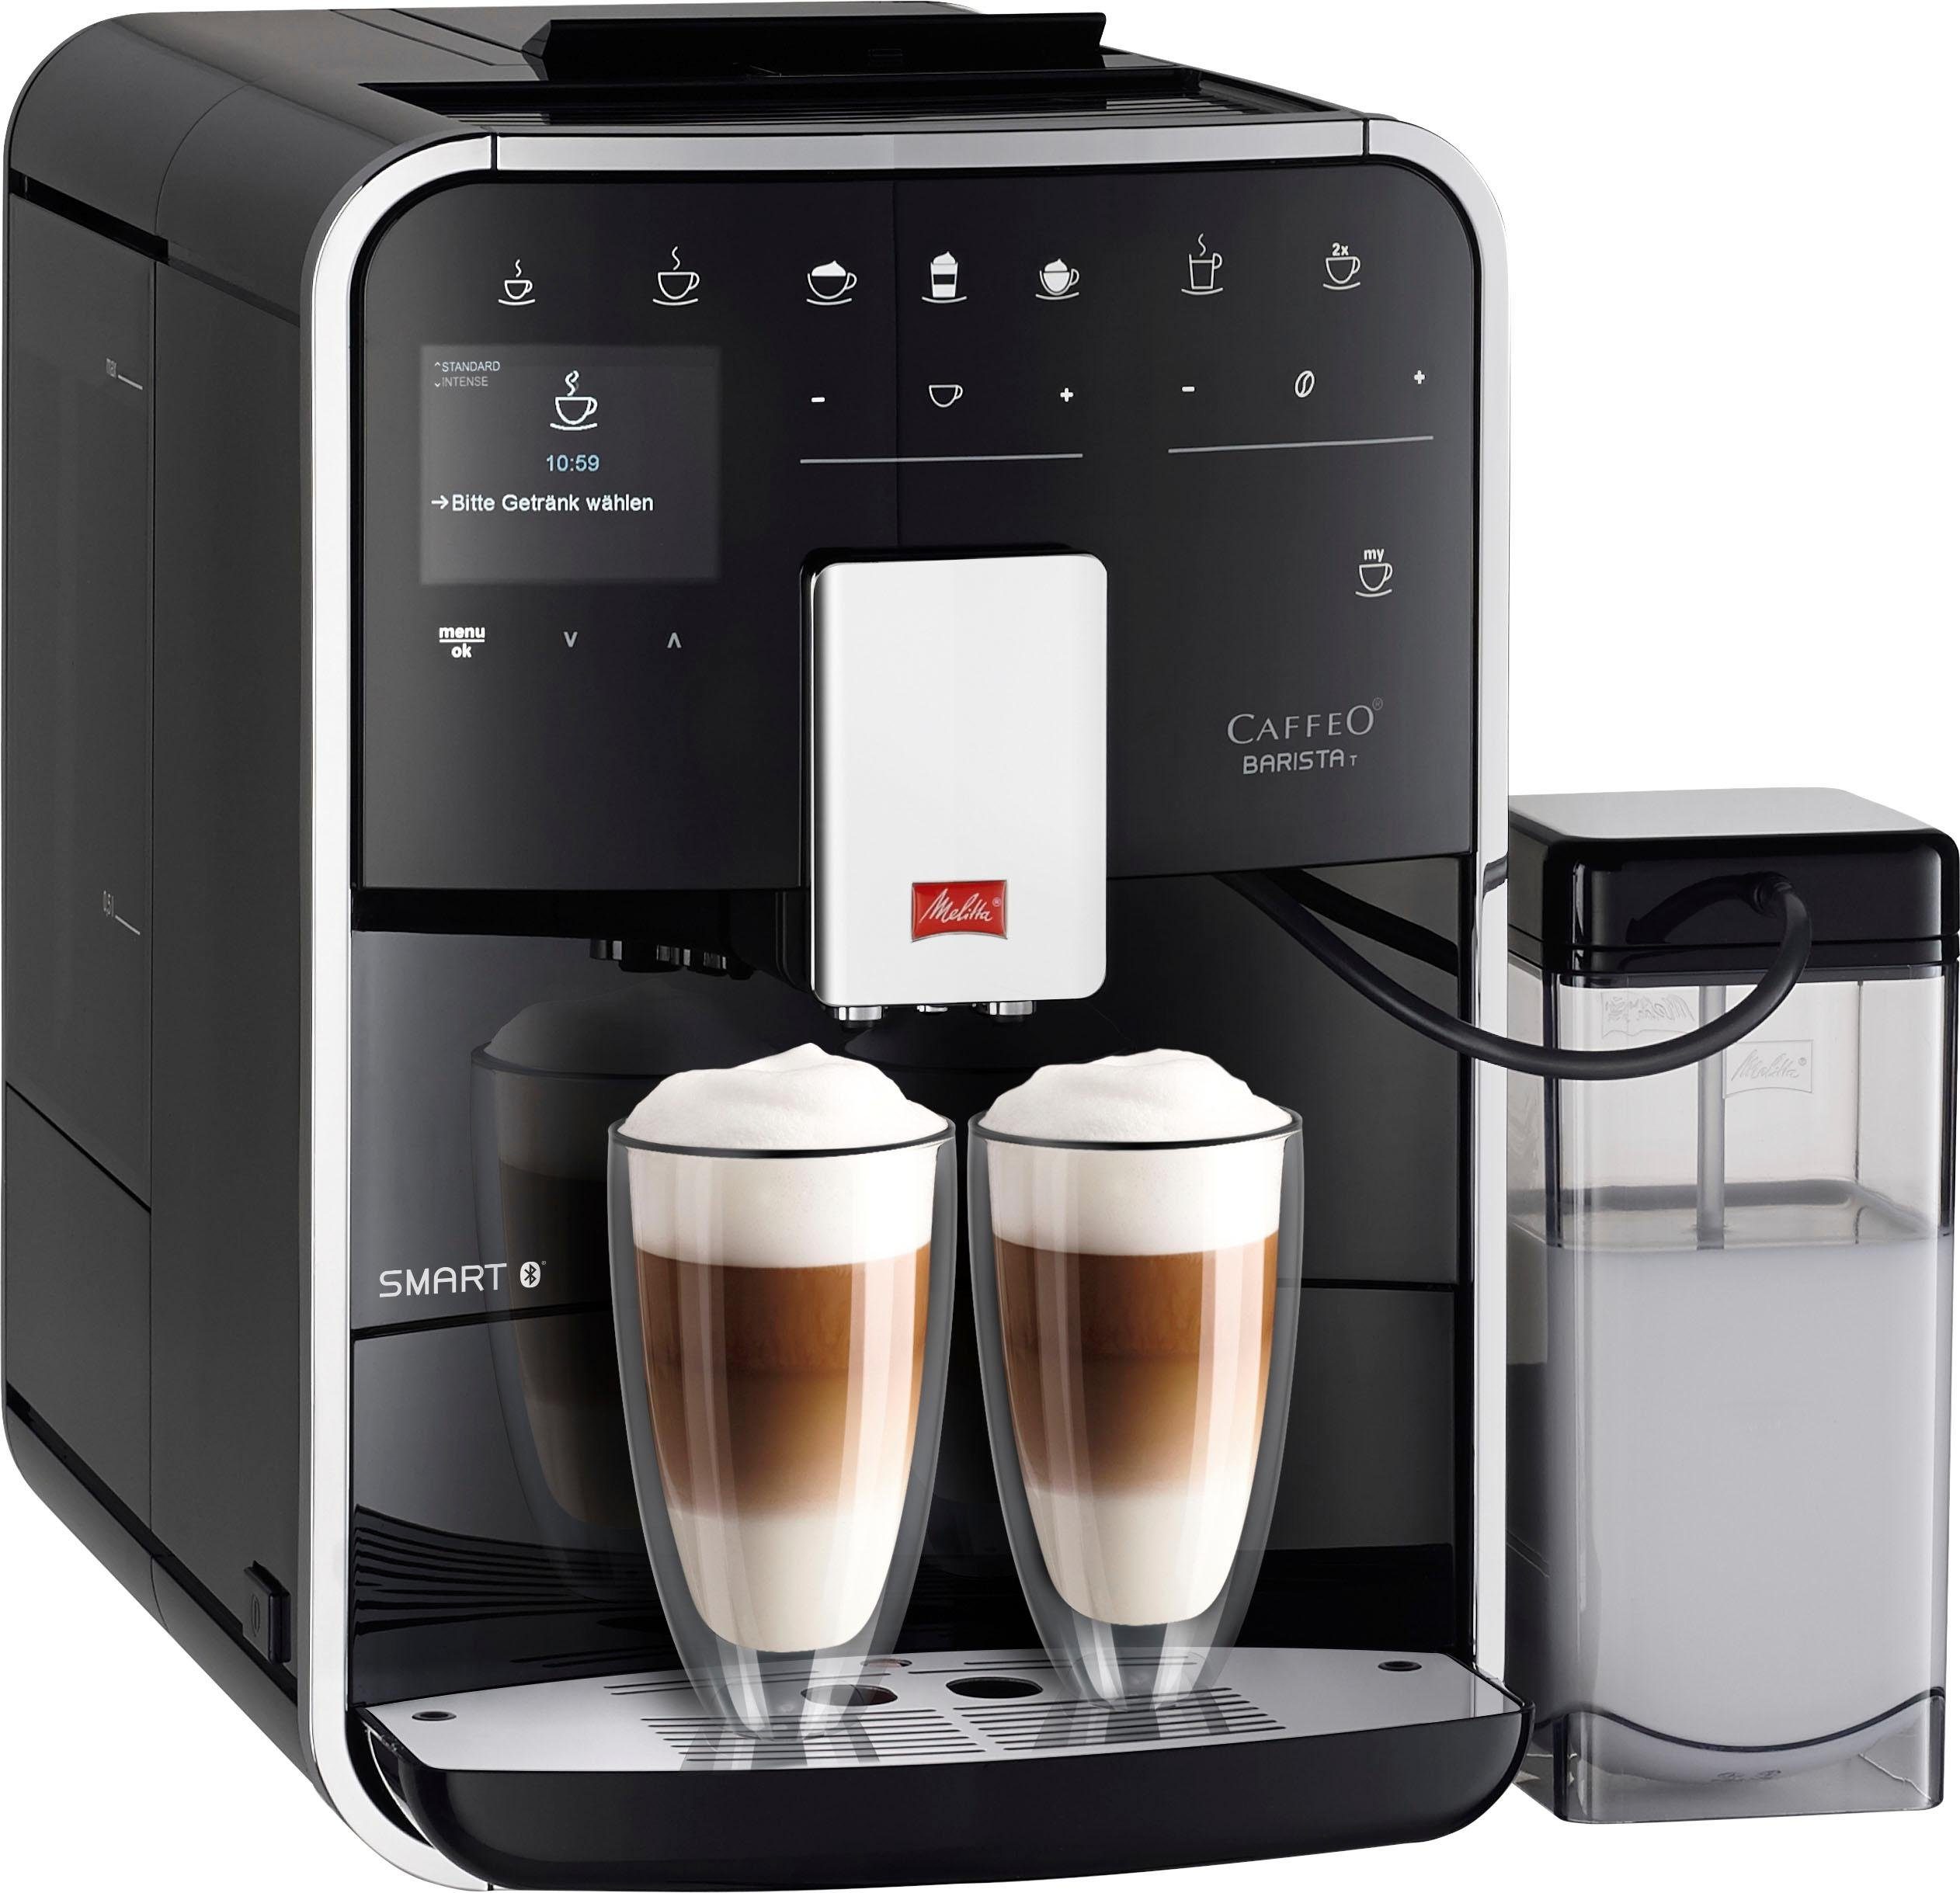 Melitta Kaffeevollautomat Barista T Smart® F 83/0-102, schwarz, 4  Benutzerprofile&18 Kaffeerezepte, nach italienischem